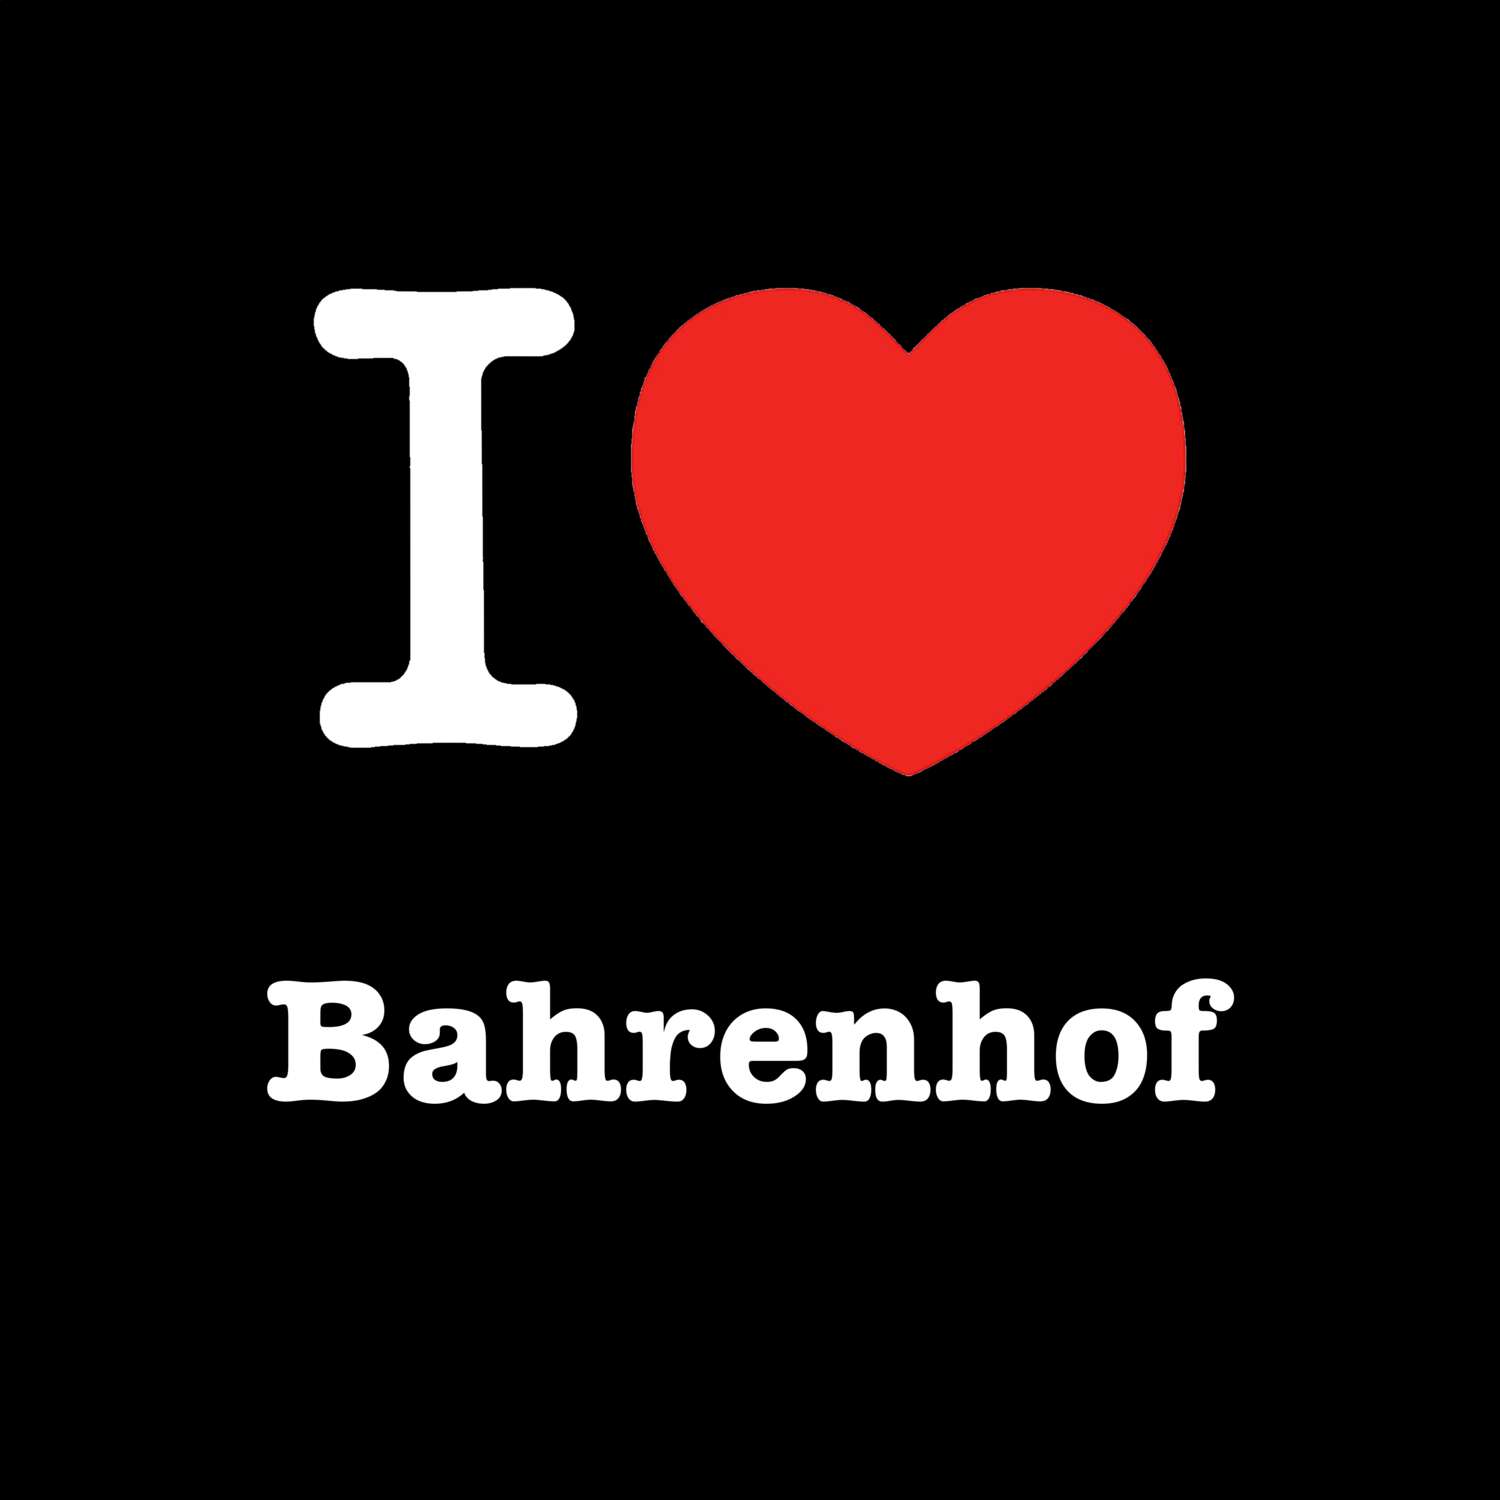 Bahrenhof T-Shirt »I love«